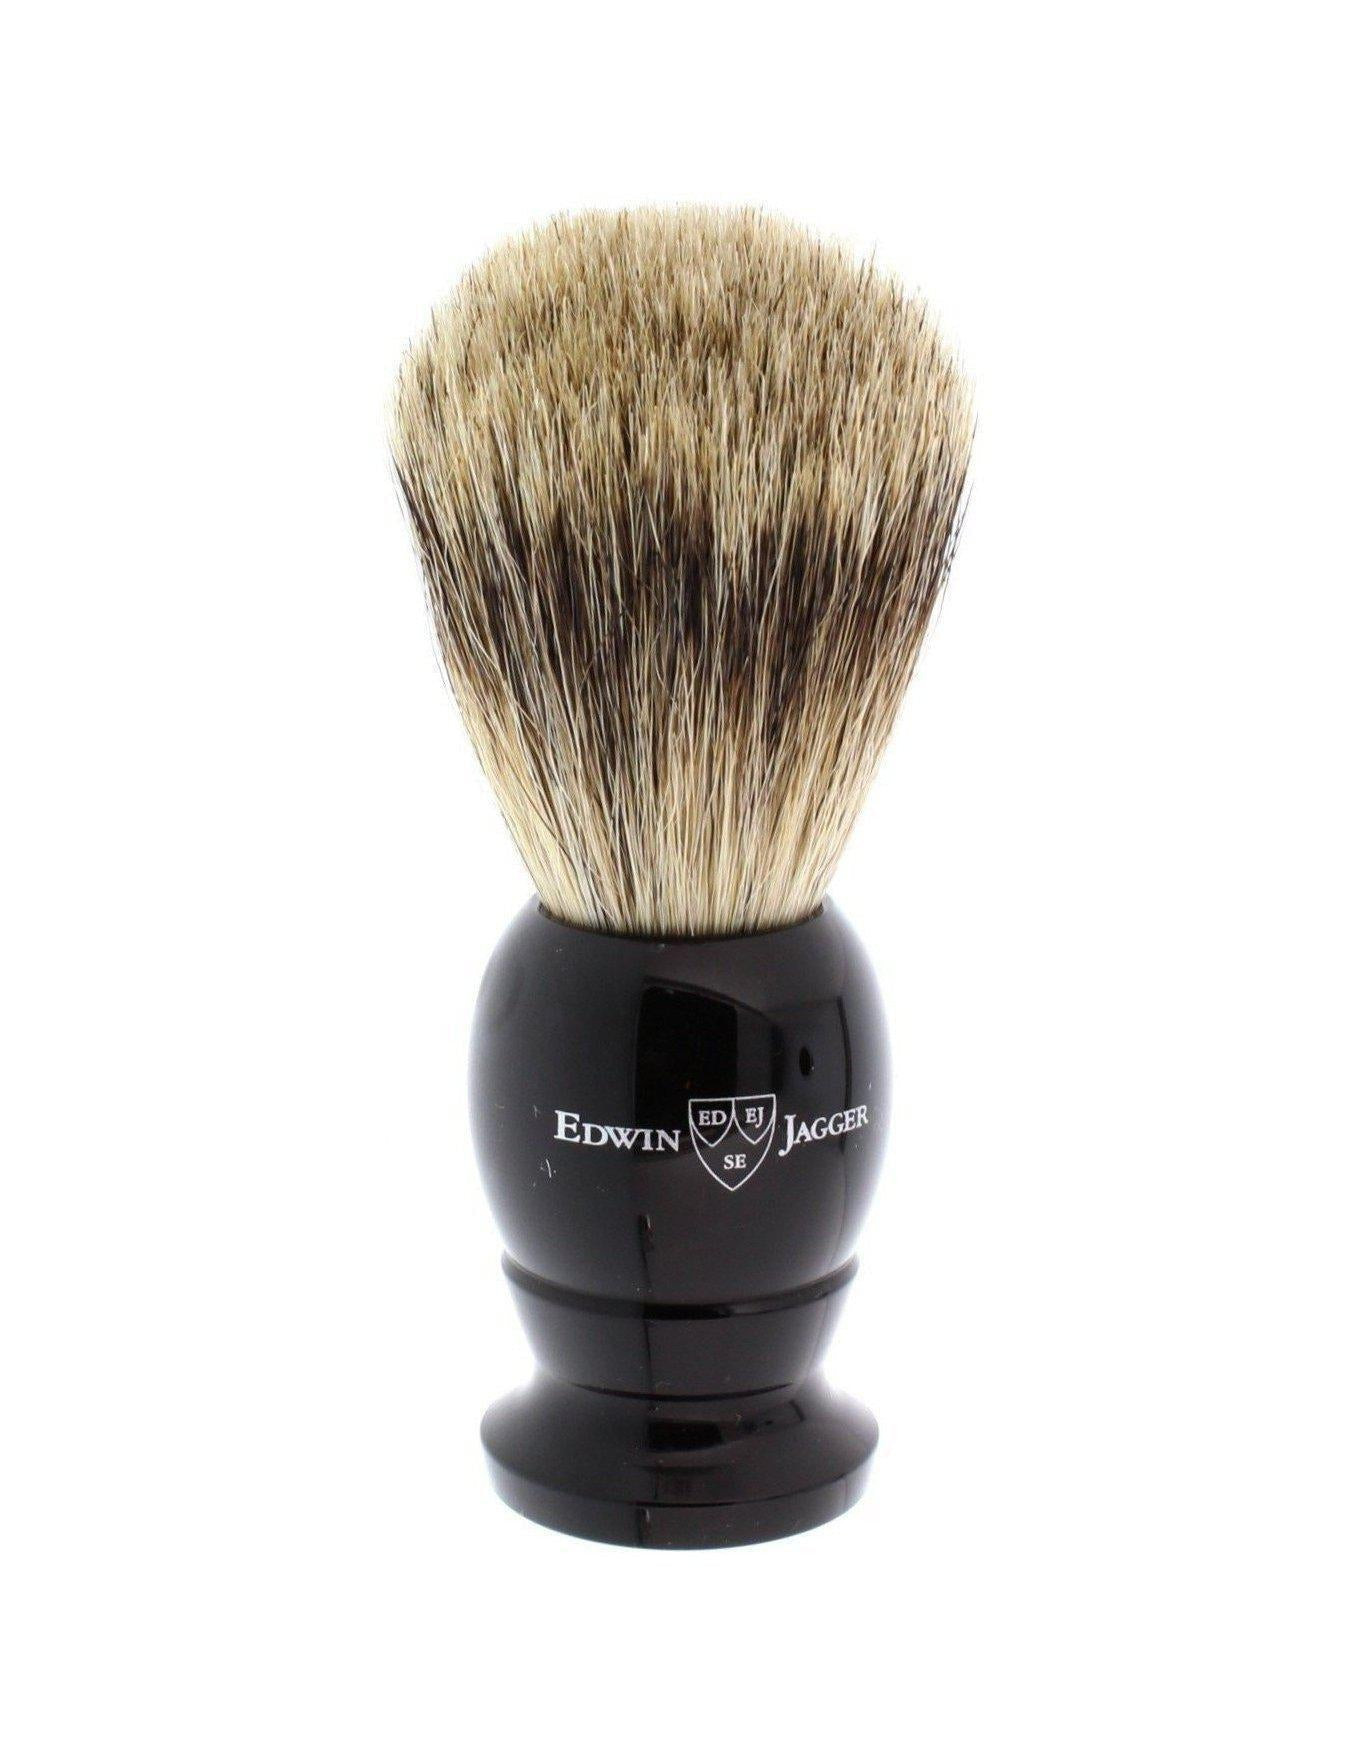 Product image 1 for Edwin Jagger Best Badger Shaving Brush, Medium, Black